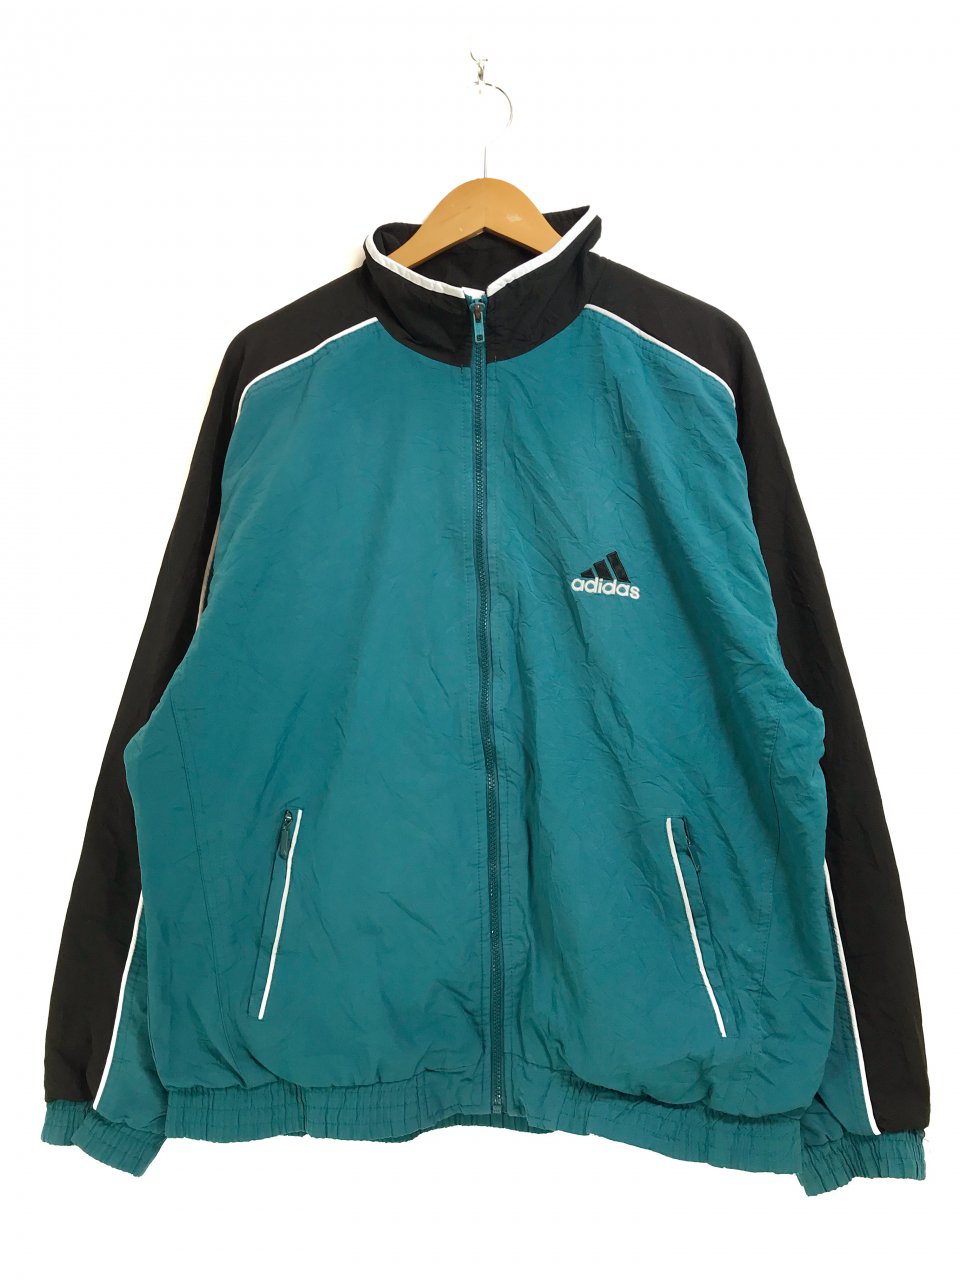 【状態良好】90s old adidas nylon jacket